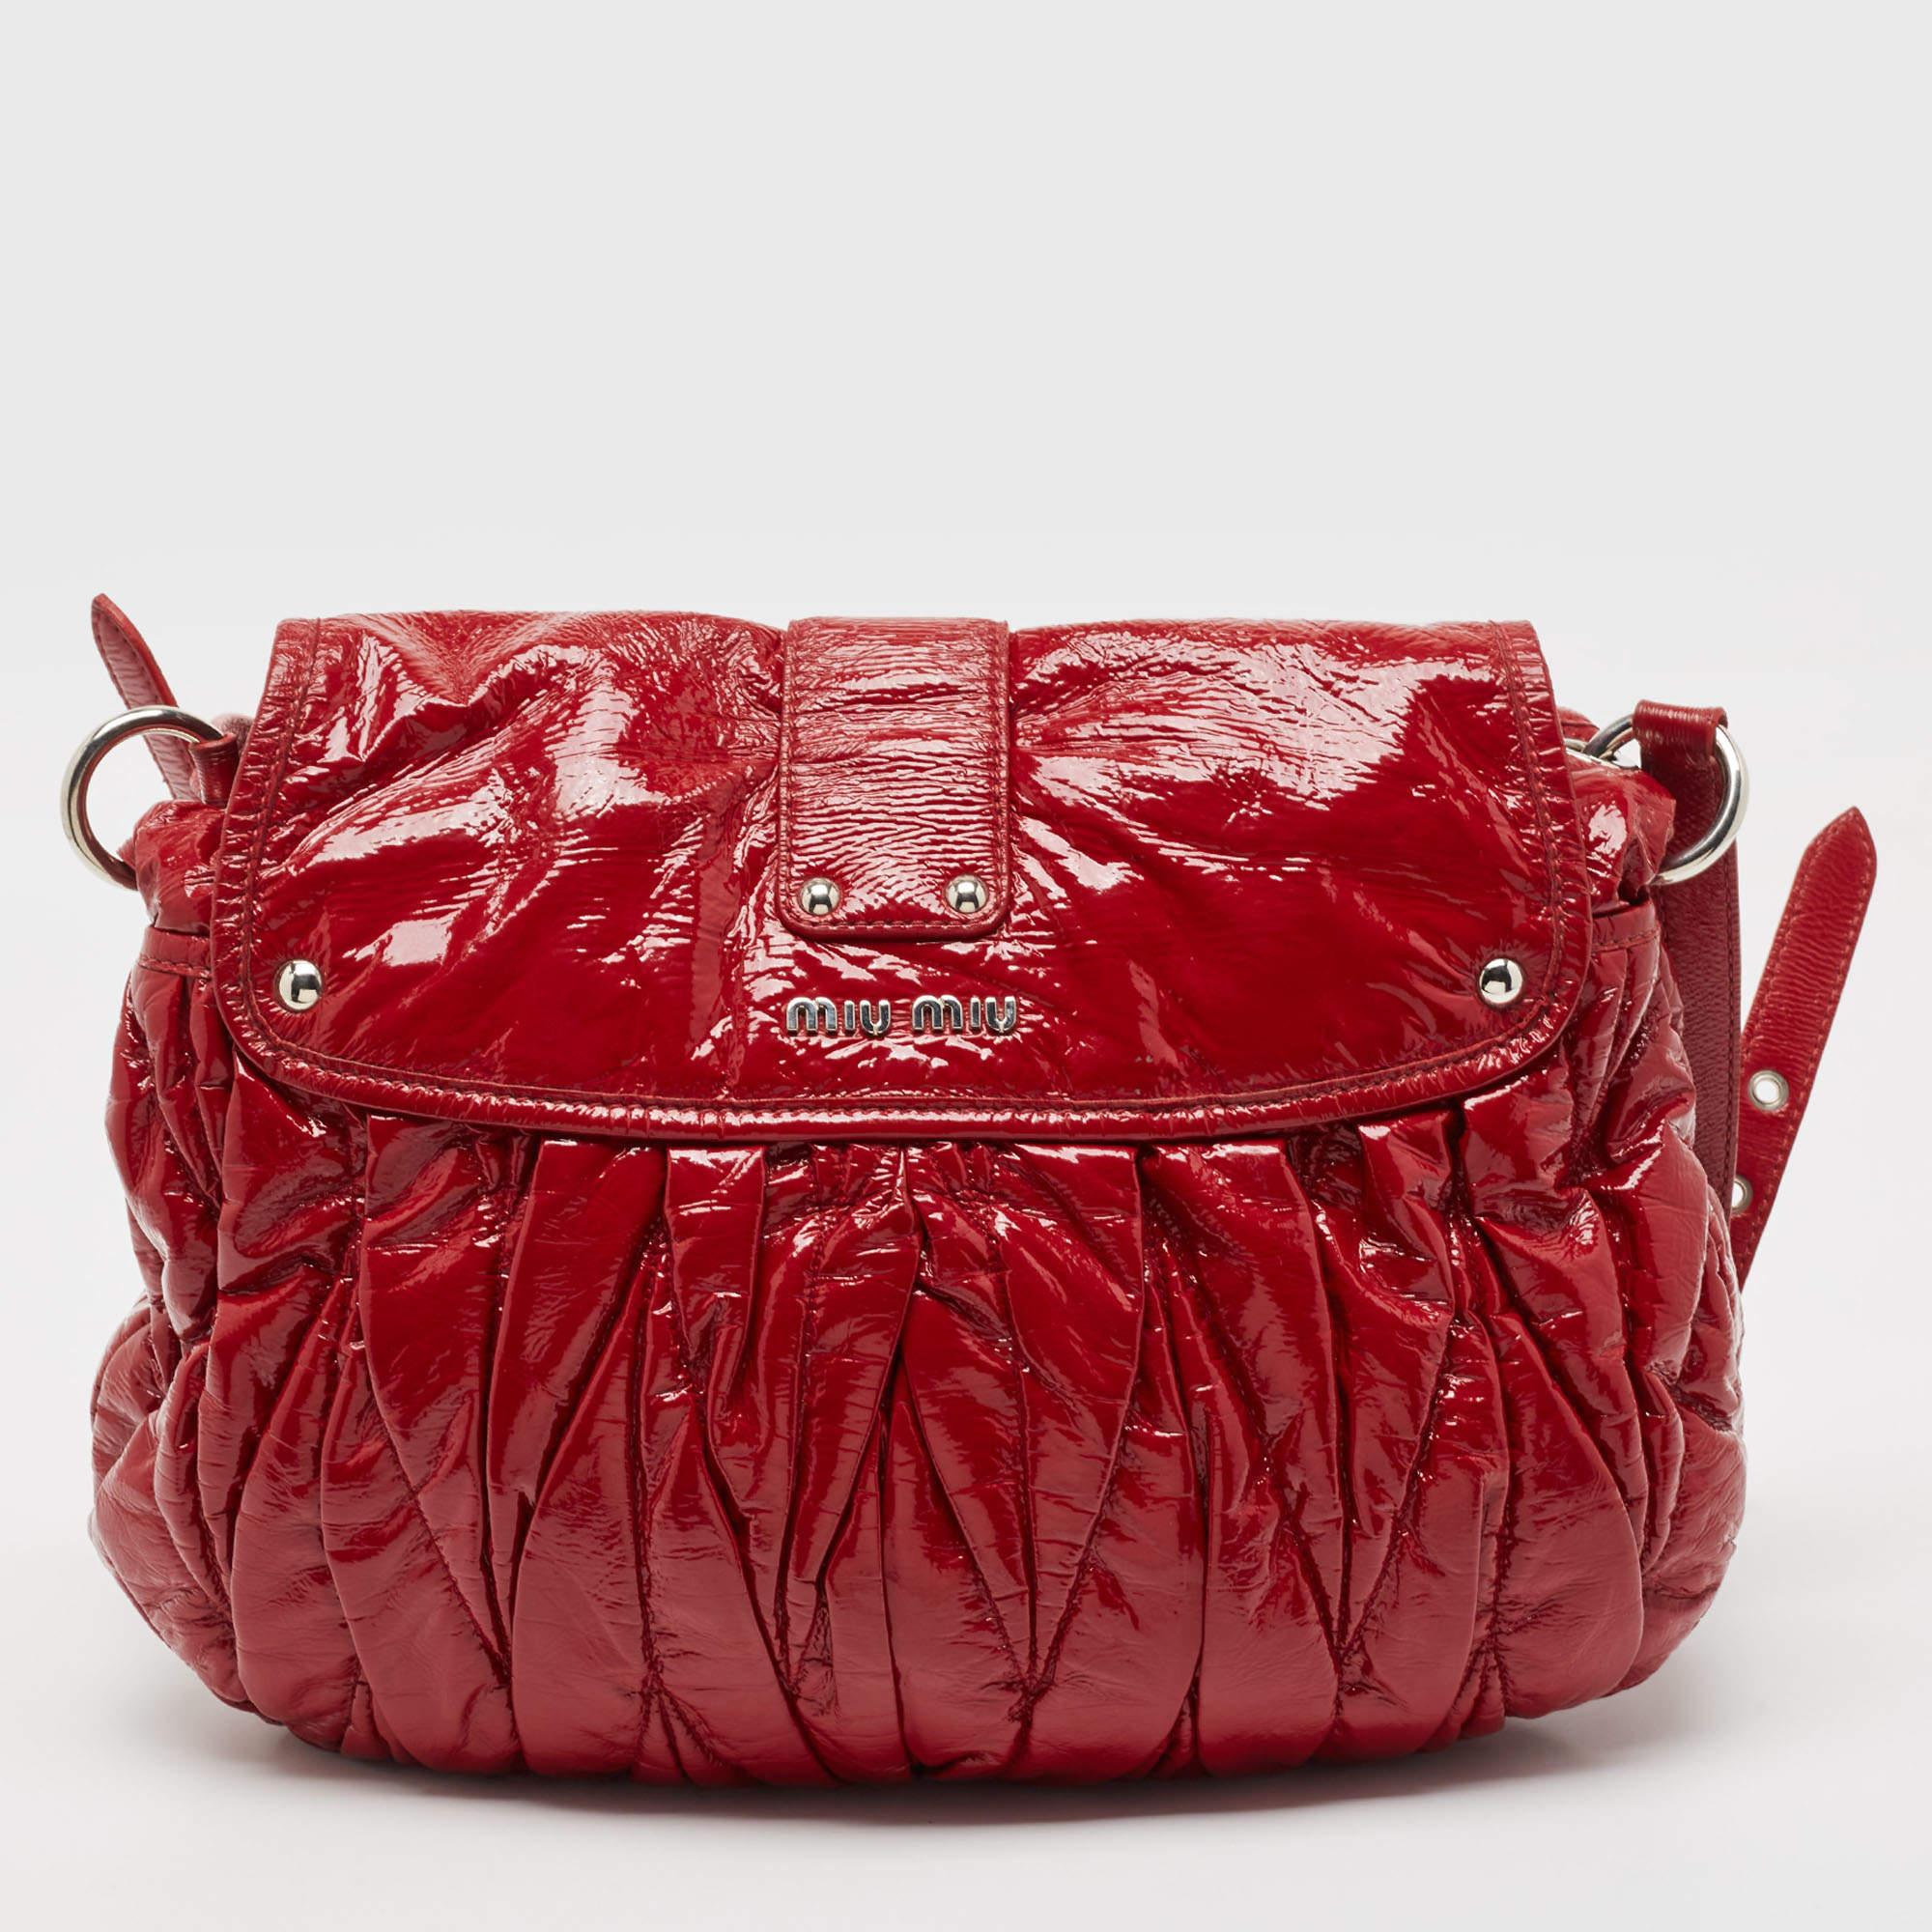 La silhouette simple et l'utilisation de matériaux durables pour l'extérieur font ressortir l'attrait de ce sac rouge Miu Miu pour femme. Il est doté de poignées confortables et d'un intérieur bien conçu.

Comprend : Clé